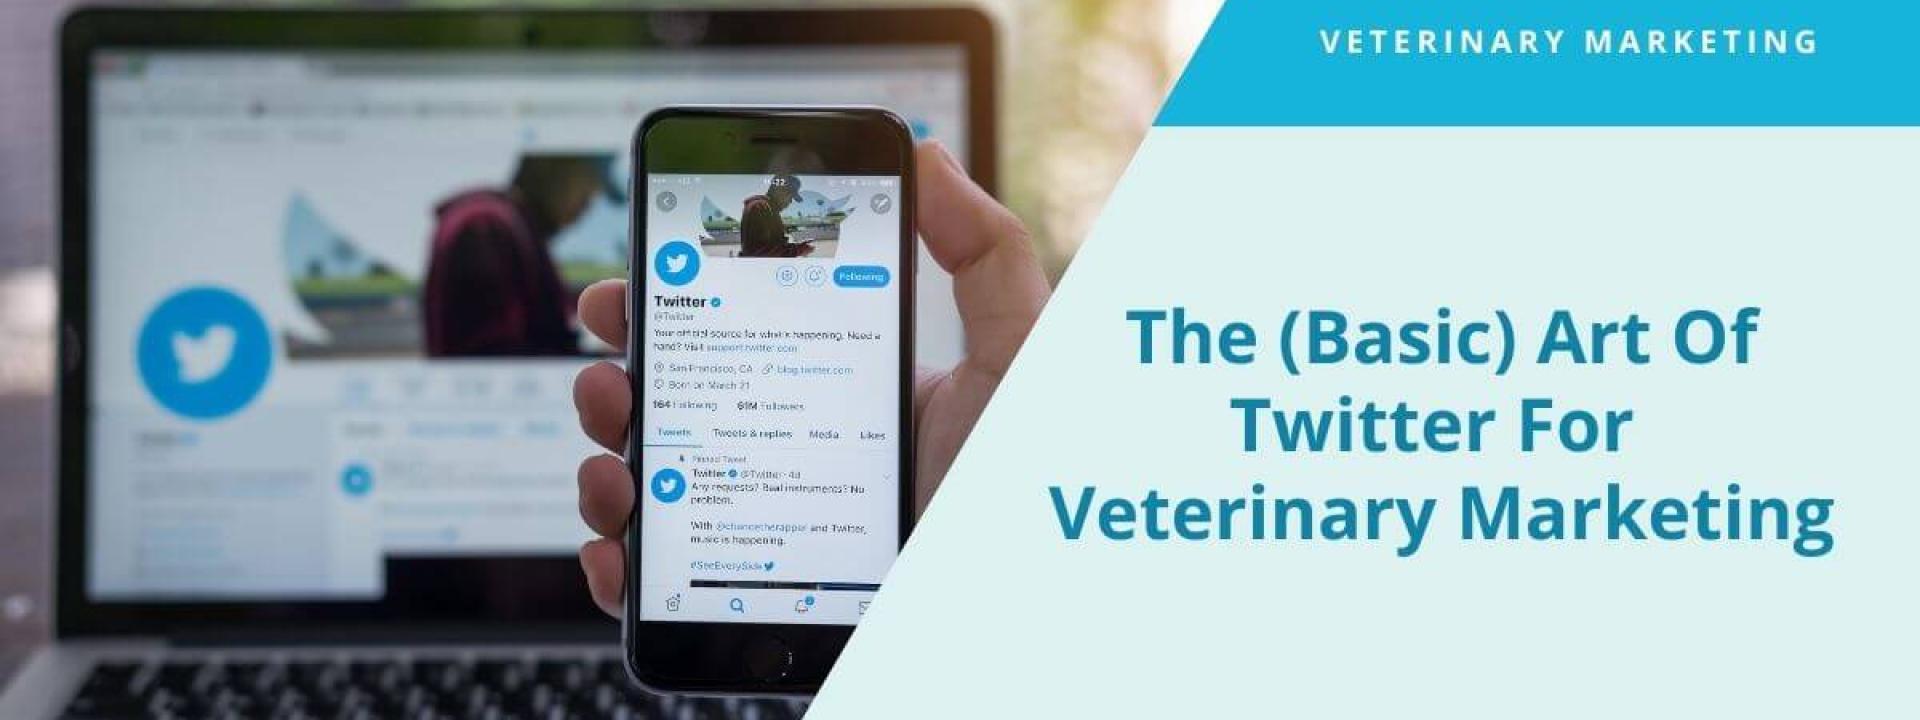 The (Basic) Art Of Twitter For Veterinary Marketing